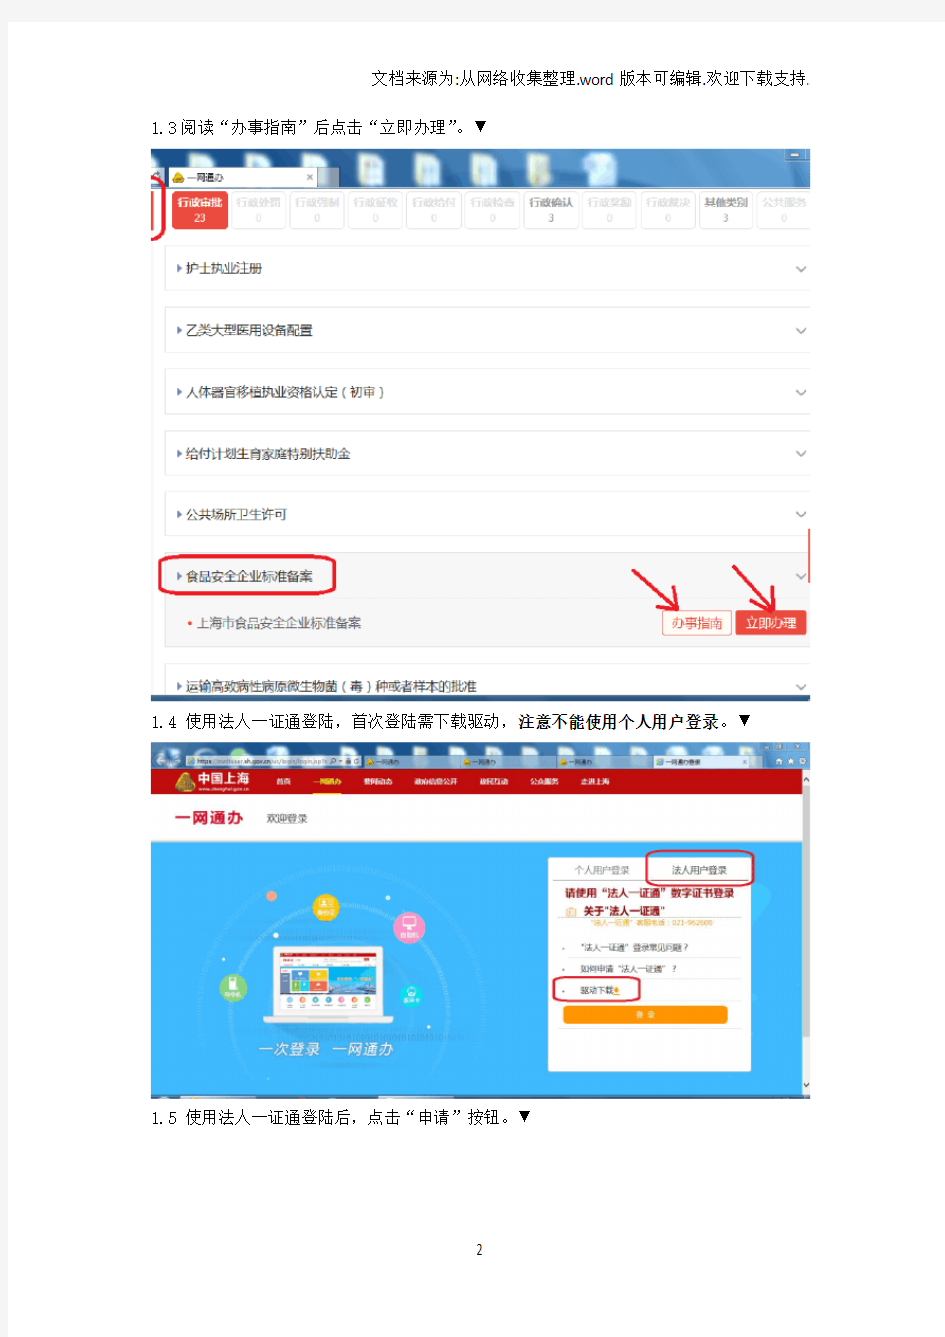 上海市食品安全企业标准网上备案使用说明书公众版